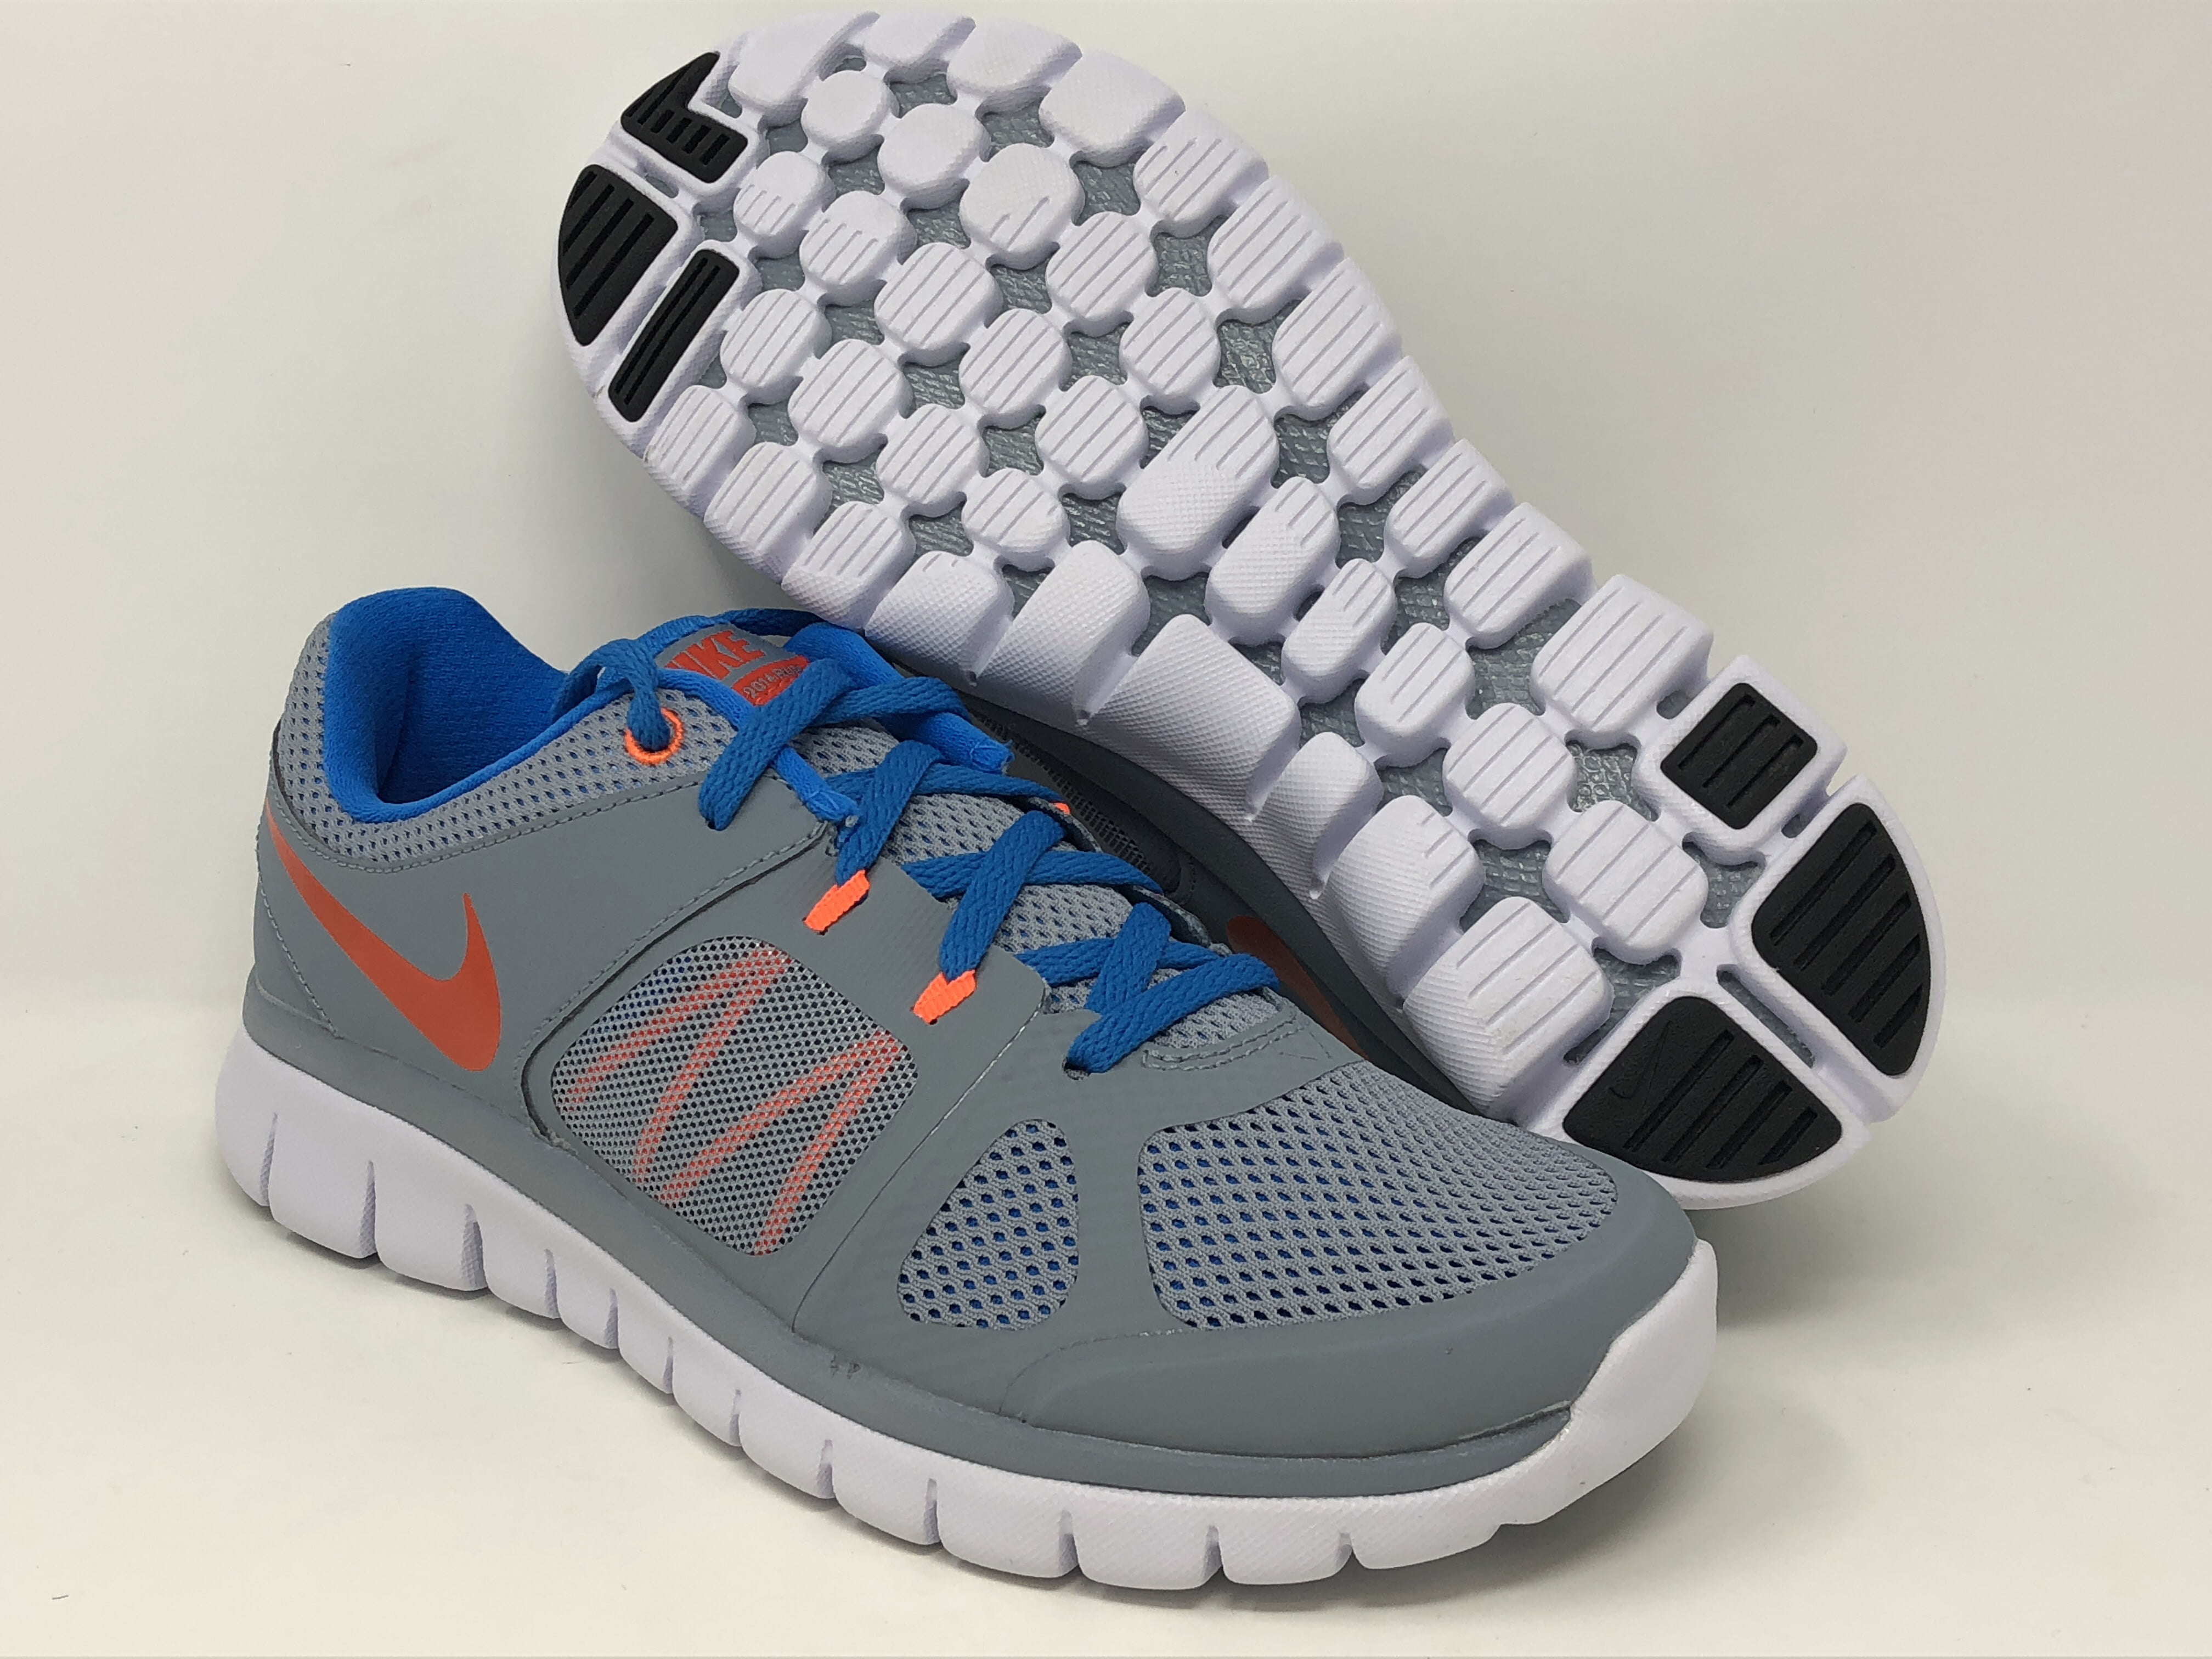 Comercialización con las manos en la masa atraer Nike Boy's Flex 2014 RN Running Shoe, Grey/Orange/Black, 6Y US - Walmart.com